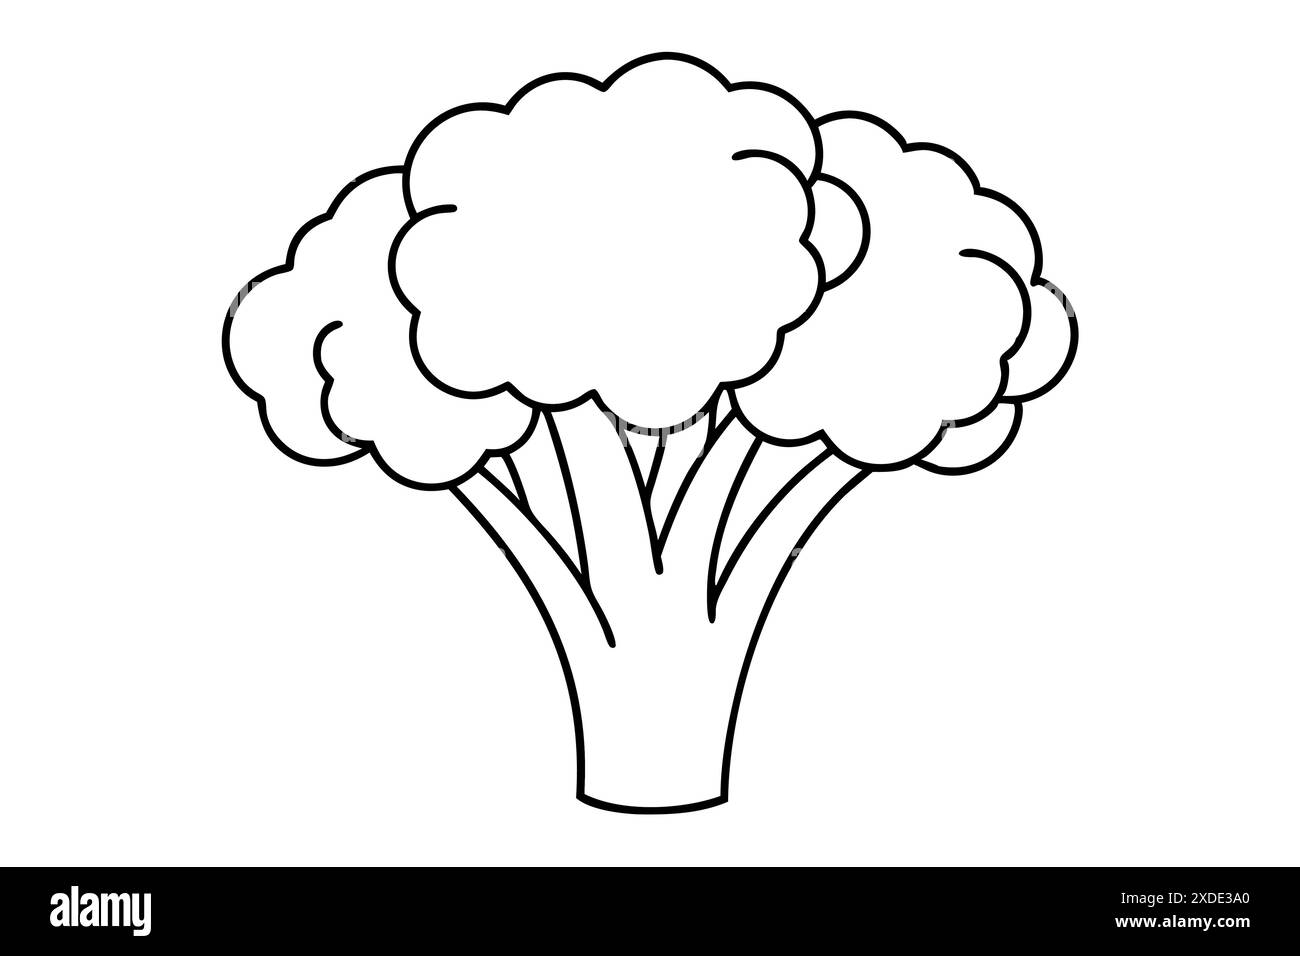 Grafica e illustrazione della linea di broccoli Vector Illustrazione Vettoriale